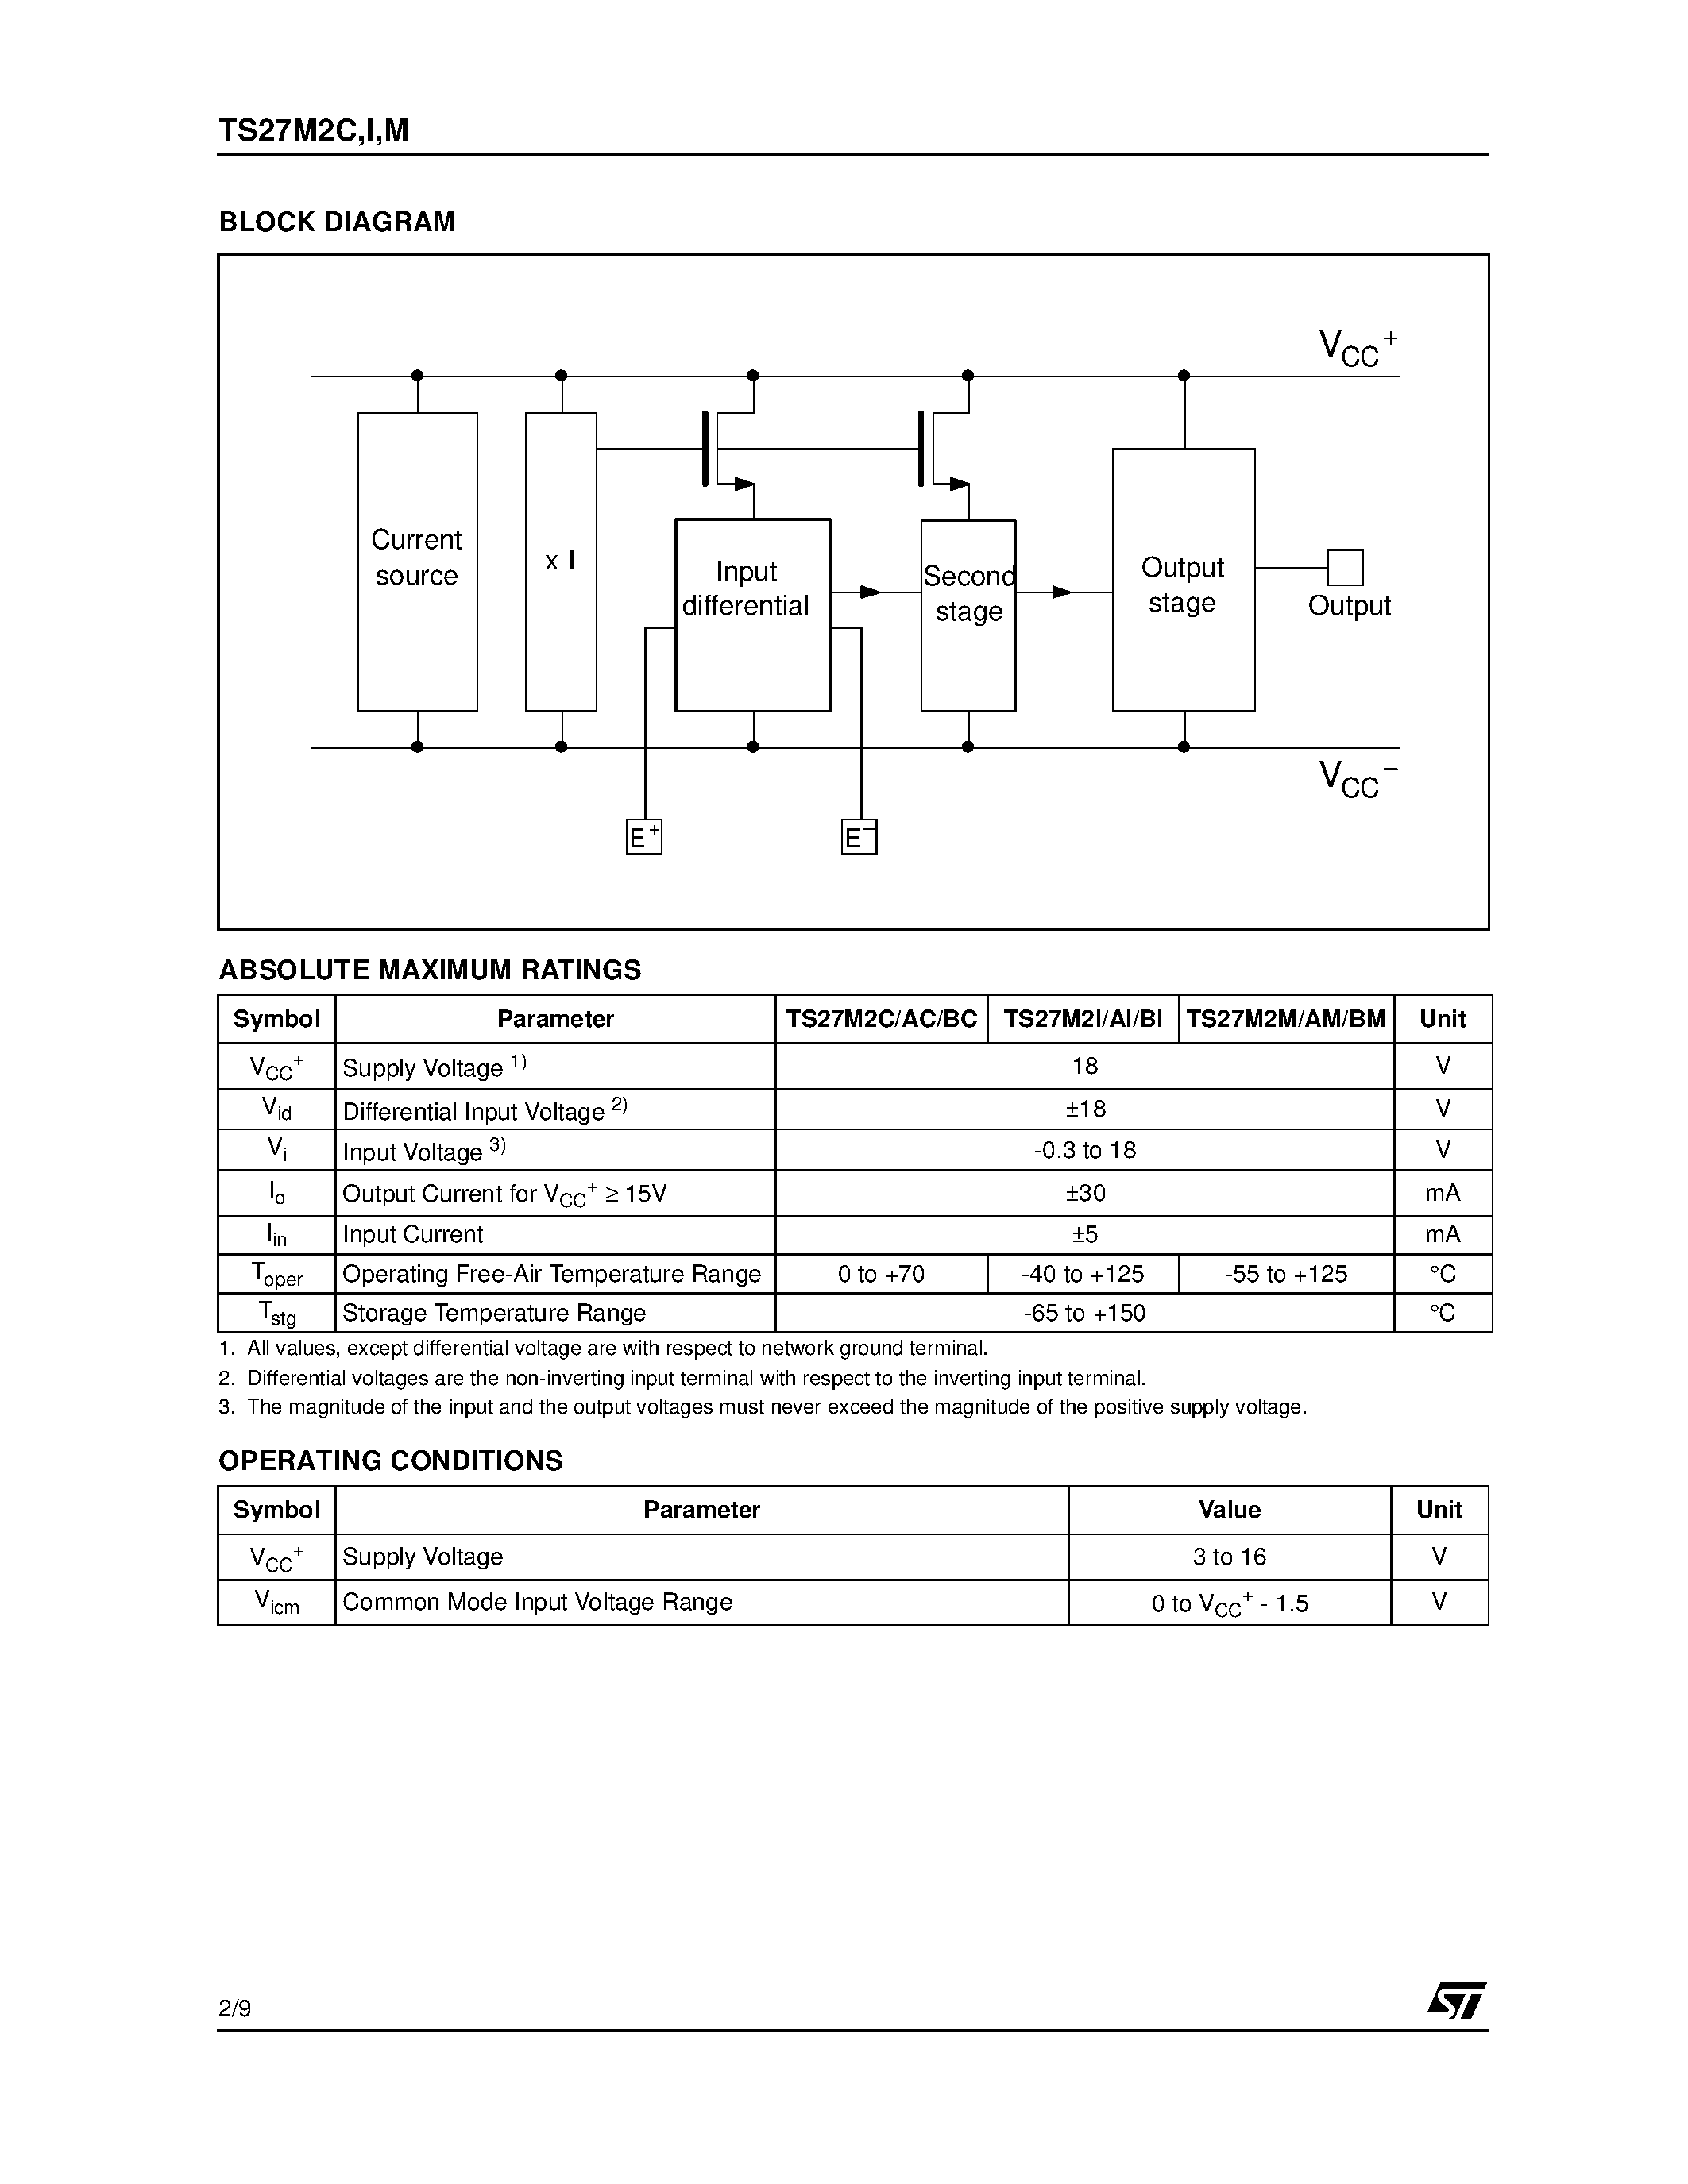 Даташит TS27M2AI - PRECISION LOW POWER CMOS DUAL OPERATIONAL AMPLIFIERS страница 2